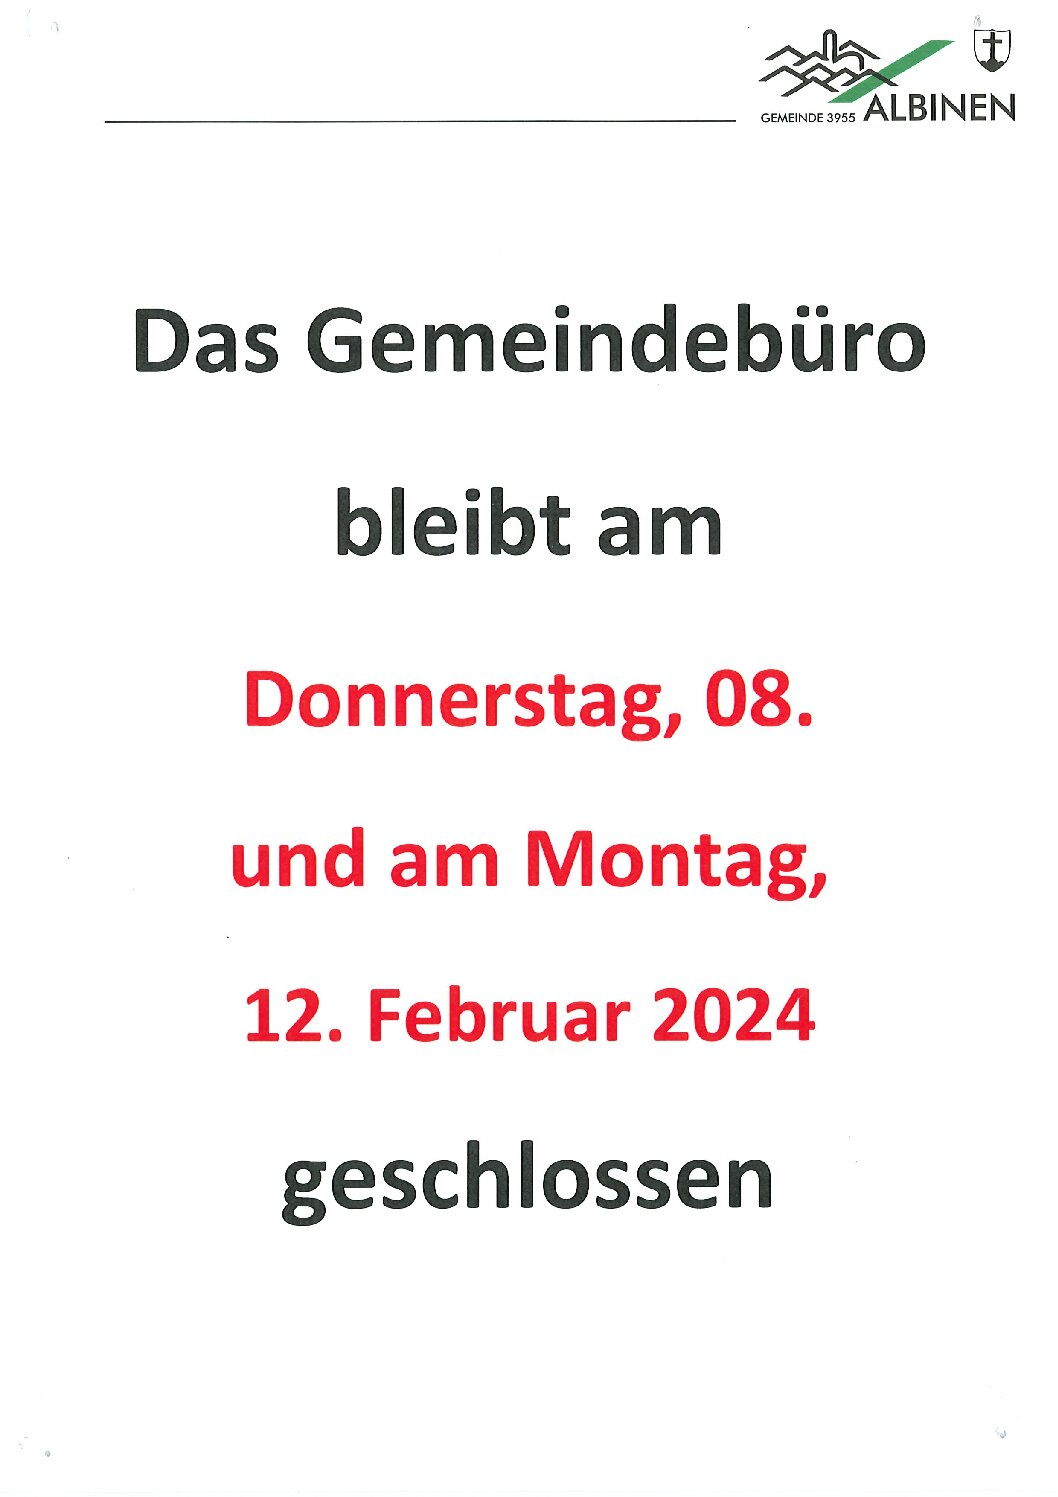 Öffnungszeiten Gemeindebüro 08. und 12. Februar 2024